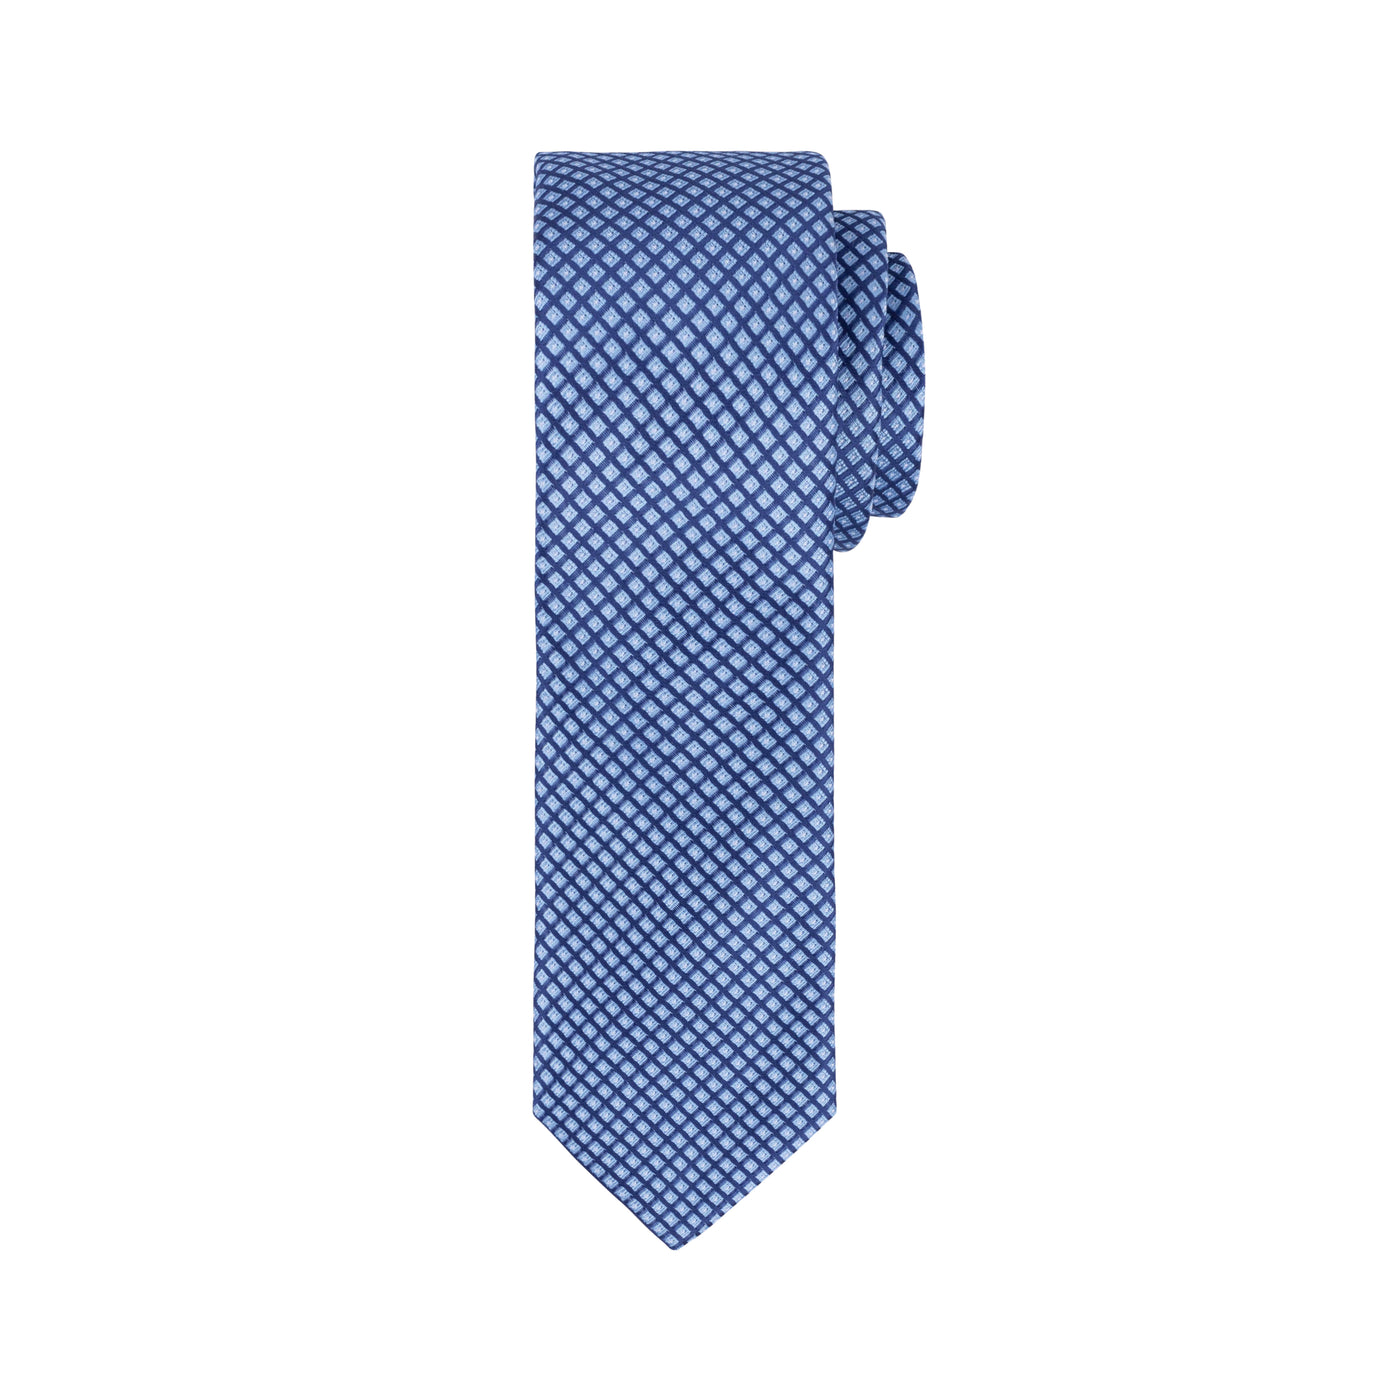 Diamond Tie in Blue